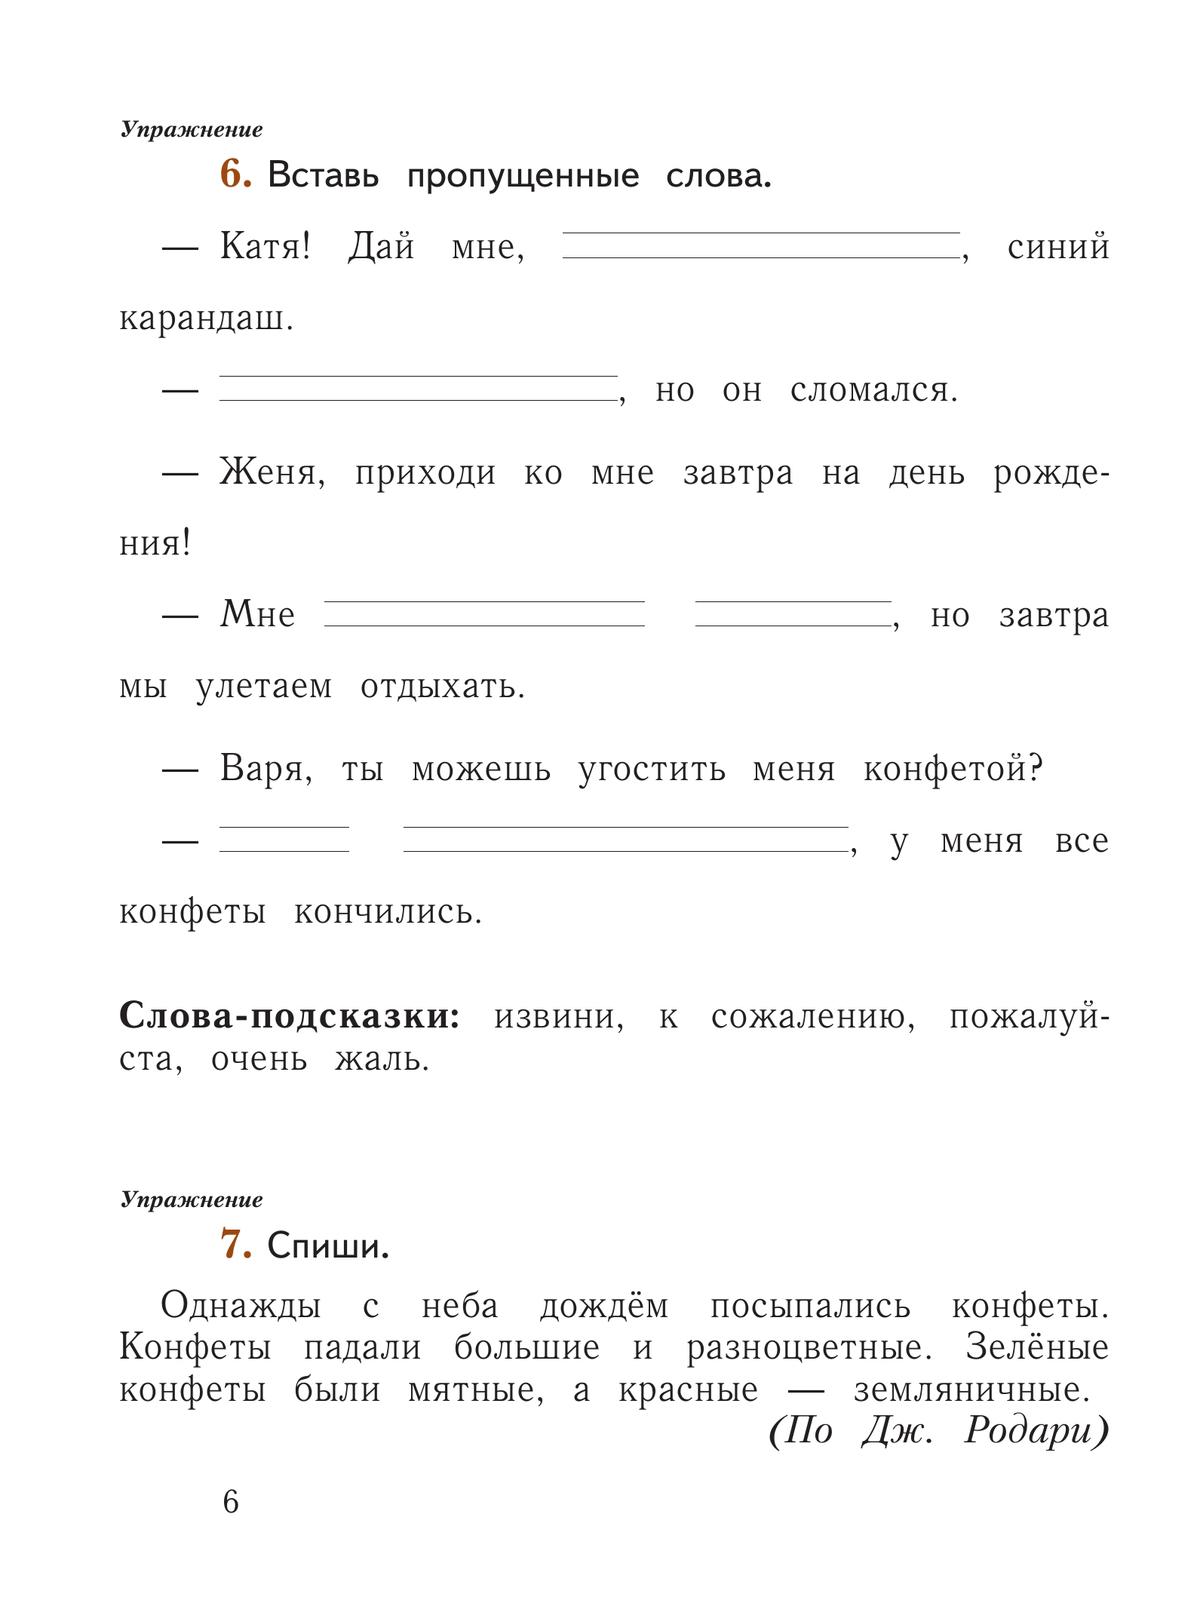 Русский язык. 1 класс. Рабочая тетрадь. В 2 частях. Часть 2 10